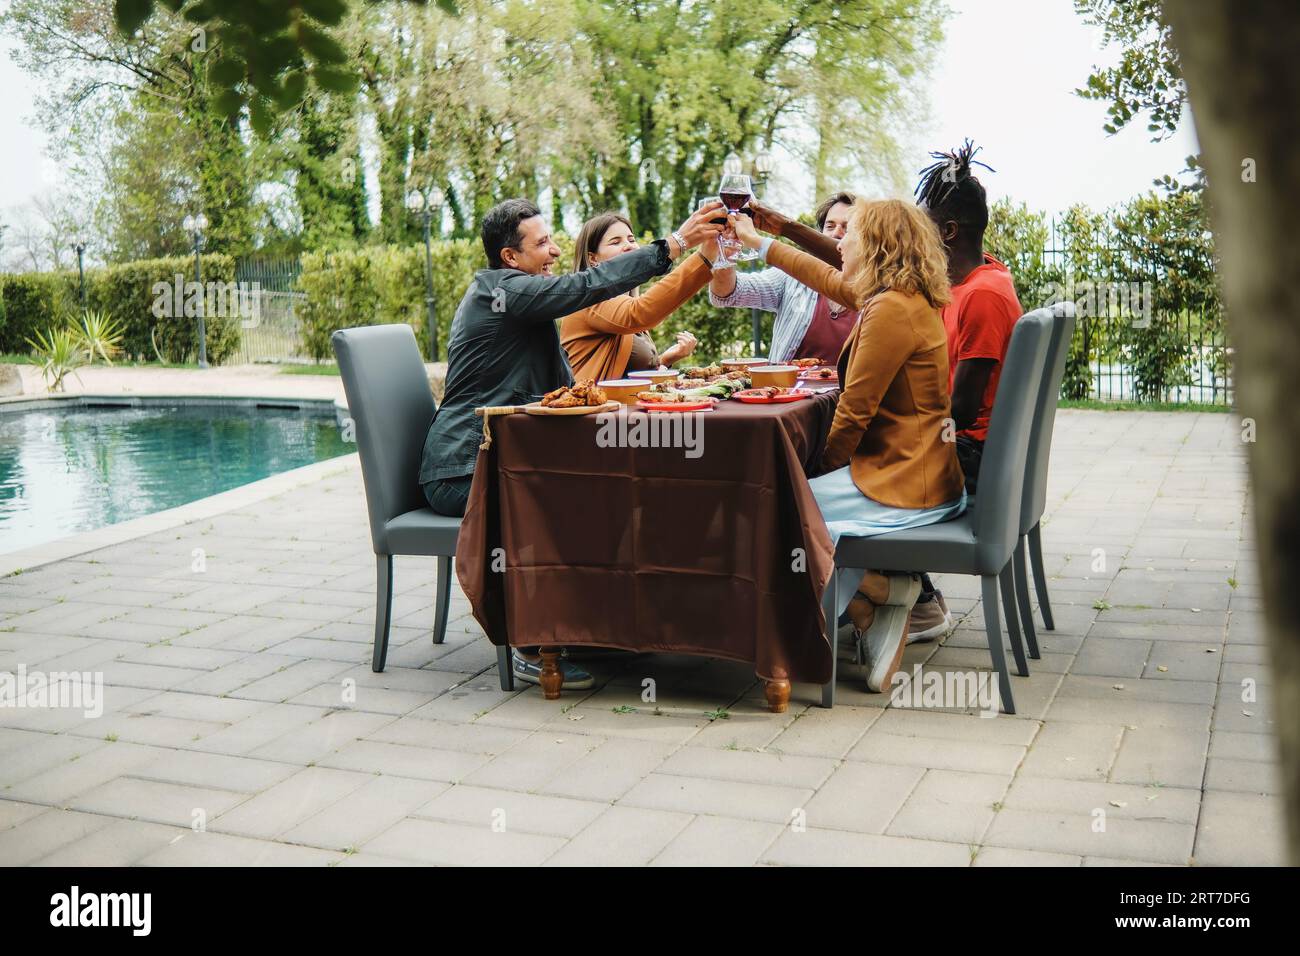 Un gruppo eterogeneo di amici, tra cui caucasici e un individuo africano, brindisi con bicchieri di vino in un cortile giardino vicino alla piscina. Si siedono togeth Foto Stock